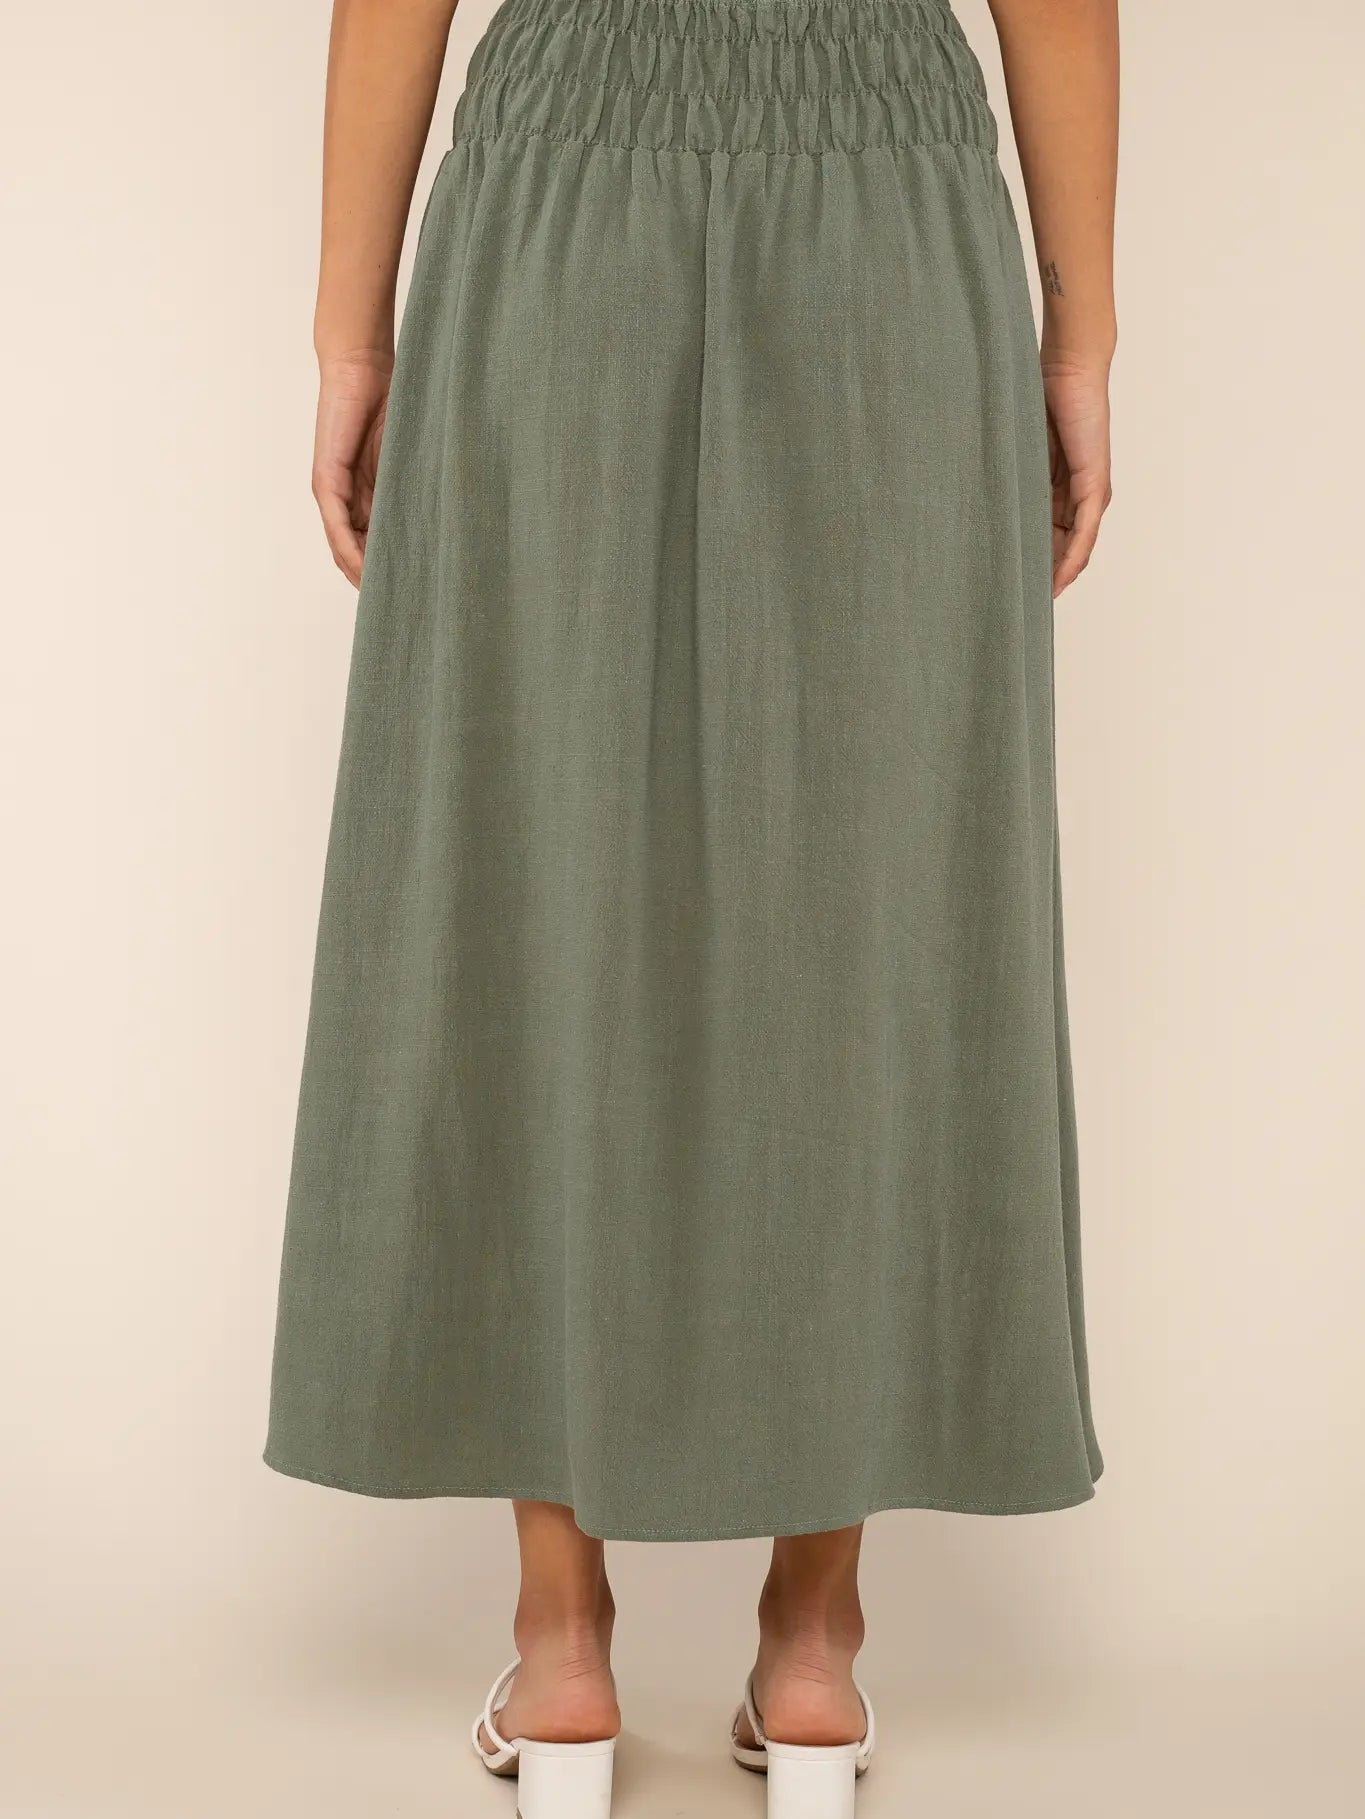 Sophia Linen Skirt